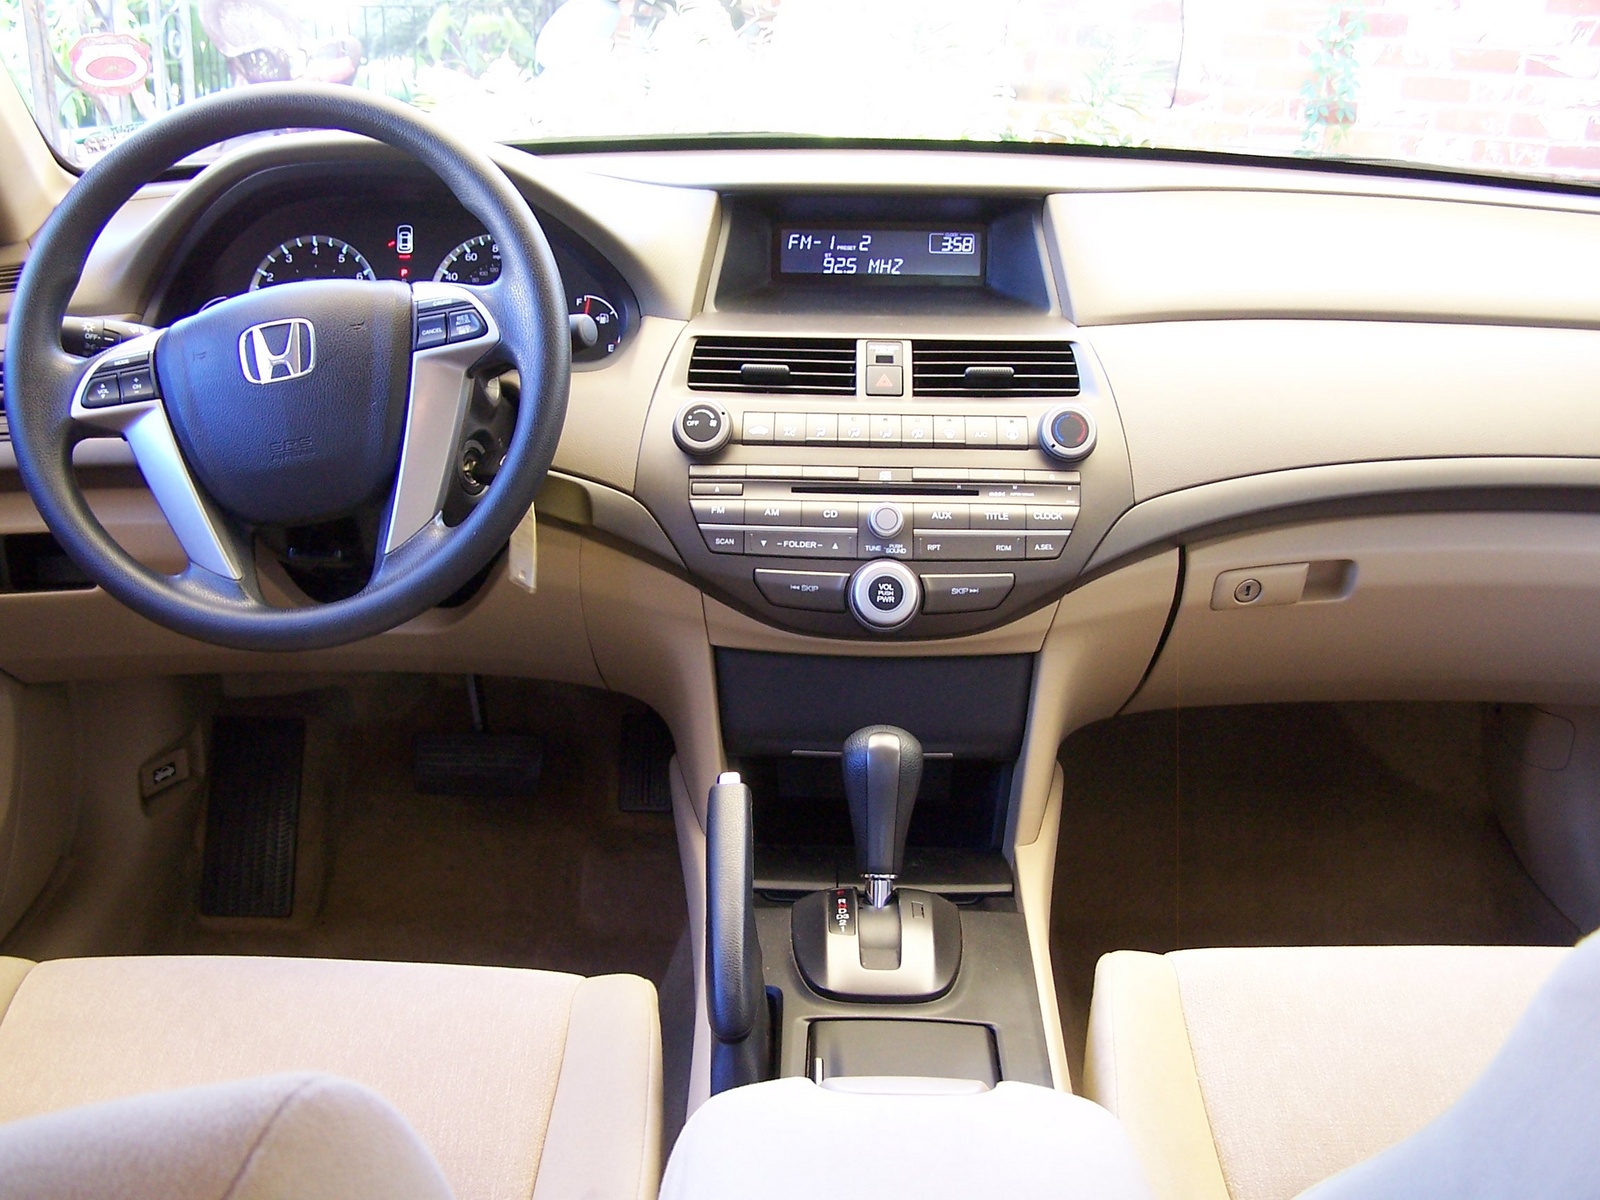 2009 Honda Accord - Pictures - CarGurus